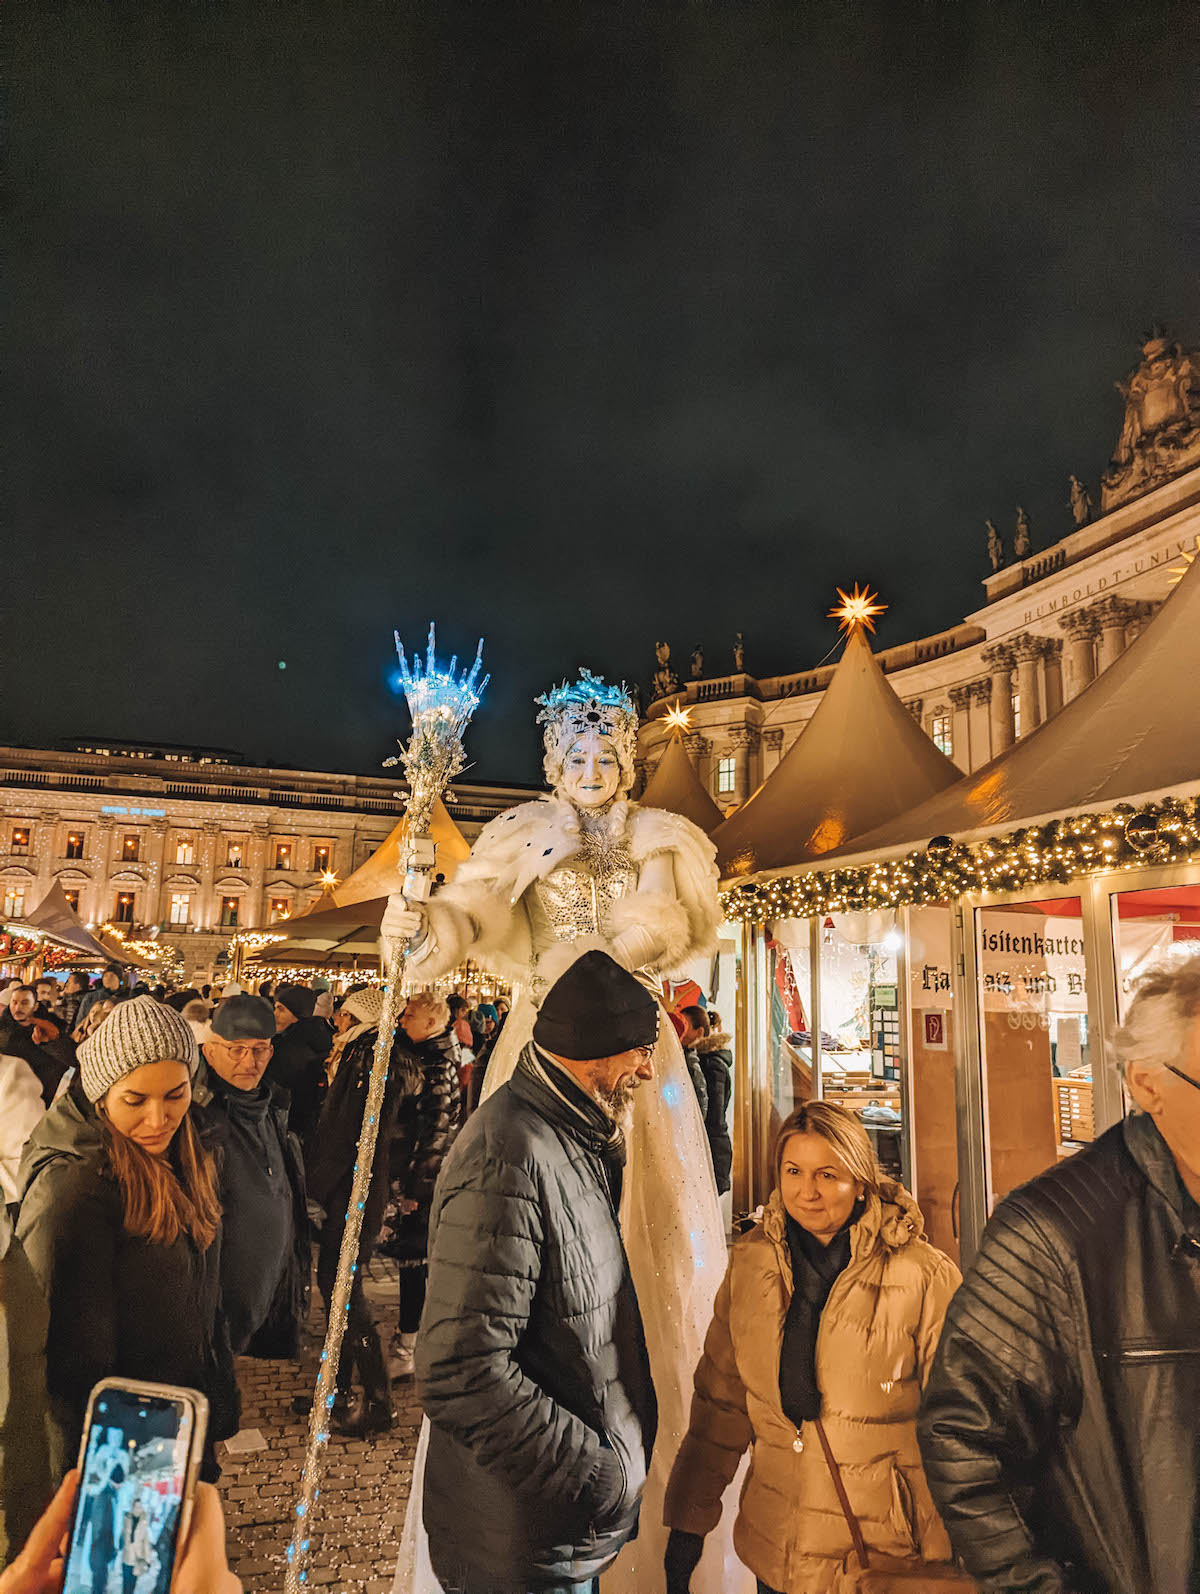 The ice queen at the Gendarmenmarkt Christmas Market (Bebelplatz)